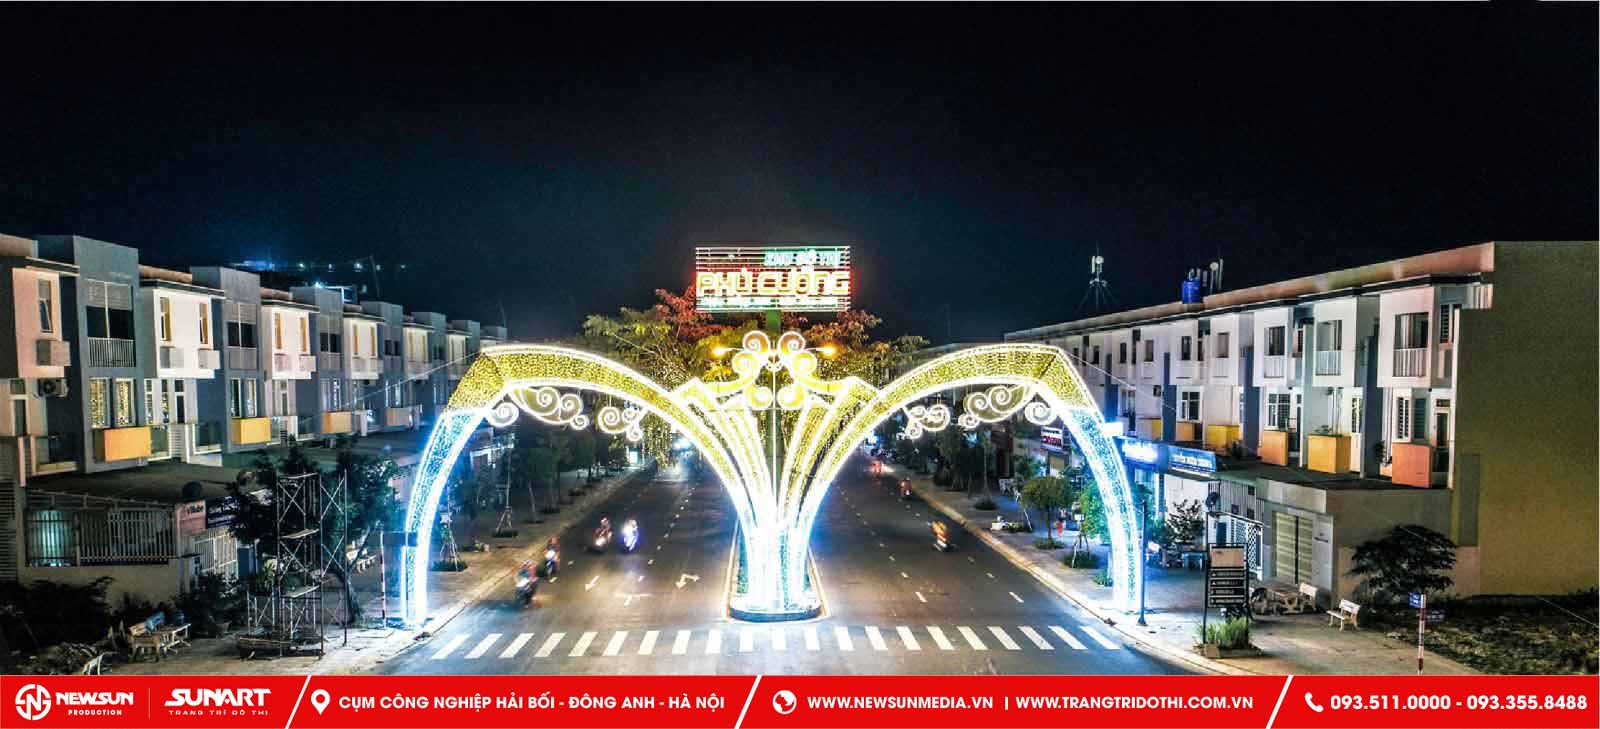 Dịch vụ thiết kế trang trí cổng chào đường phố Phú Thọ với đèn Led